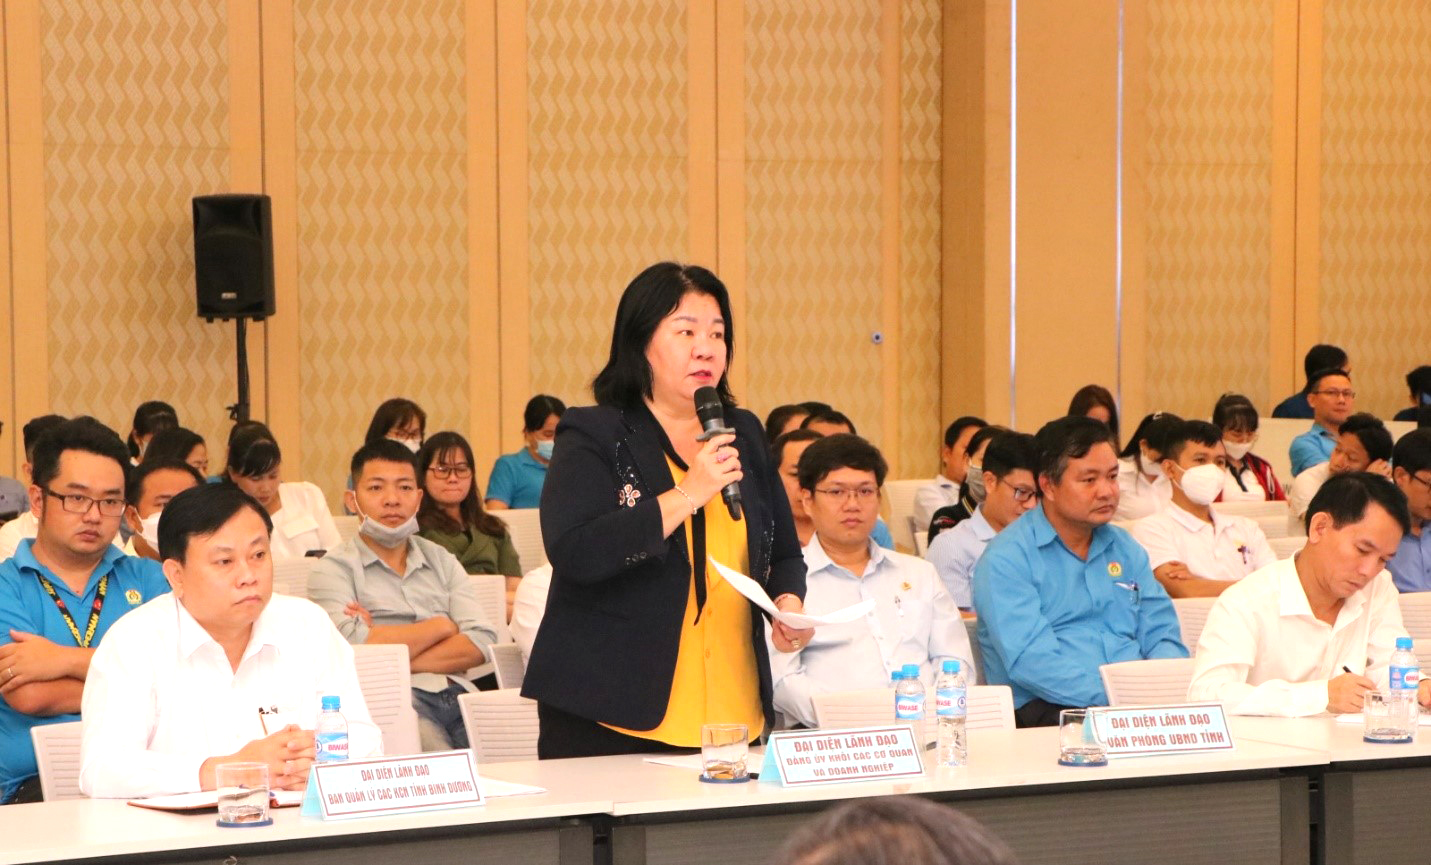 Đồng chí Nguyễn Thị Xuân Mai, Phó Bí thư Đảng ủy khối Các cơ quan và doanh nghiệp tỉnh Bình Dương trả lời ý kiến liên quan đến vấn đề được chủ doanh nghiệp, người lao động quan tâm trong công tác phát triển Đảng.